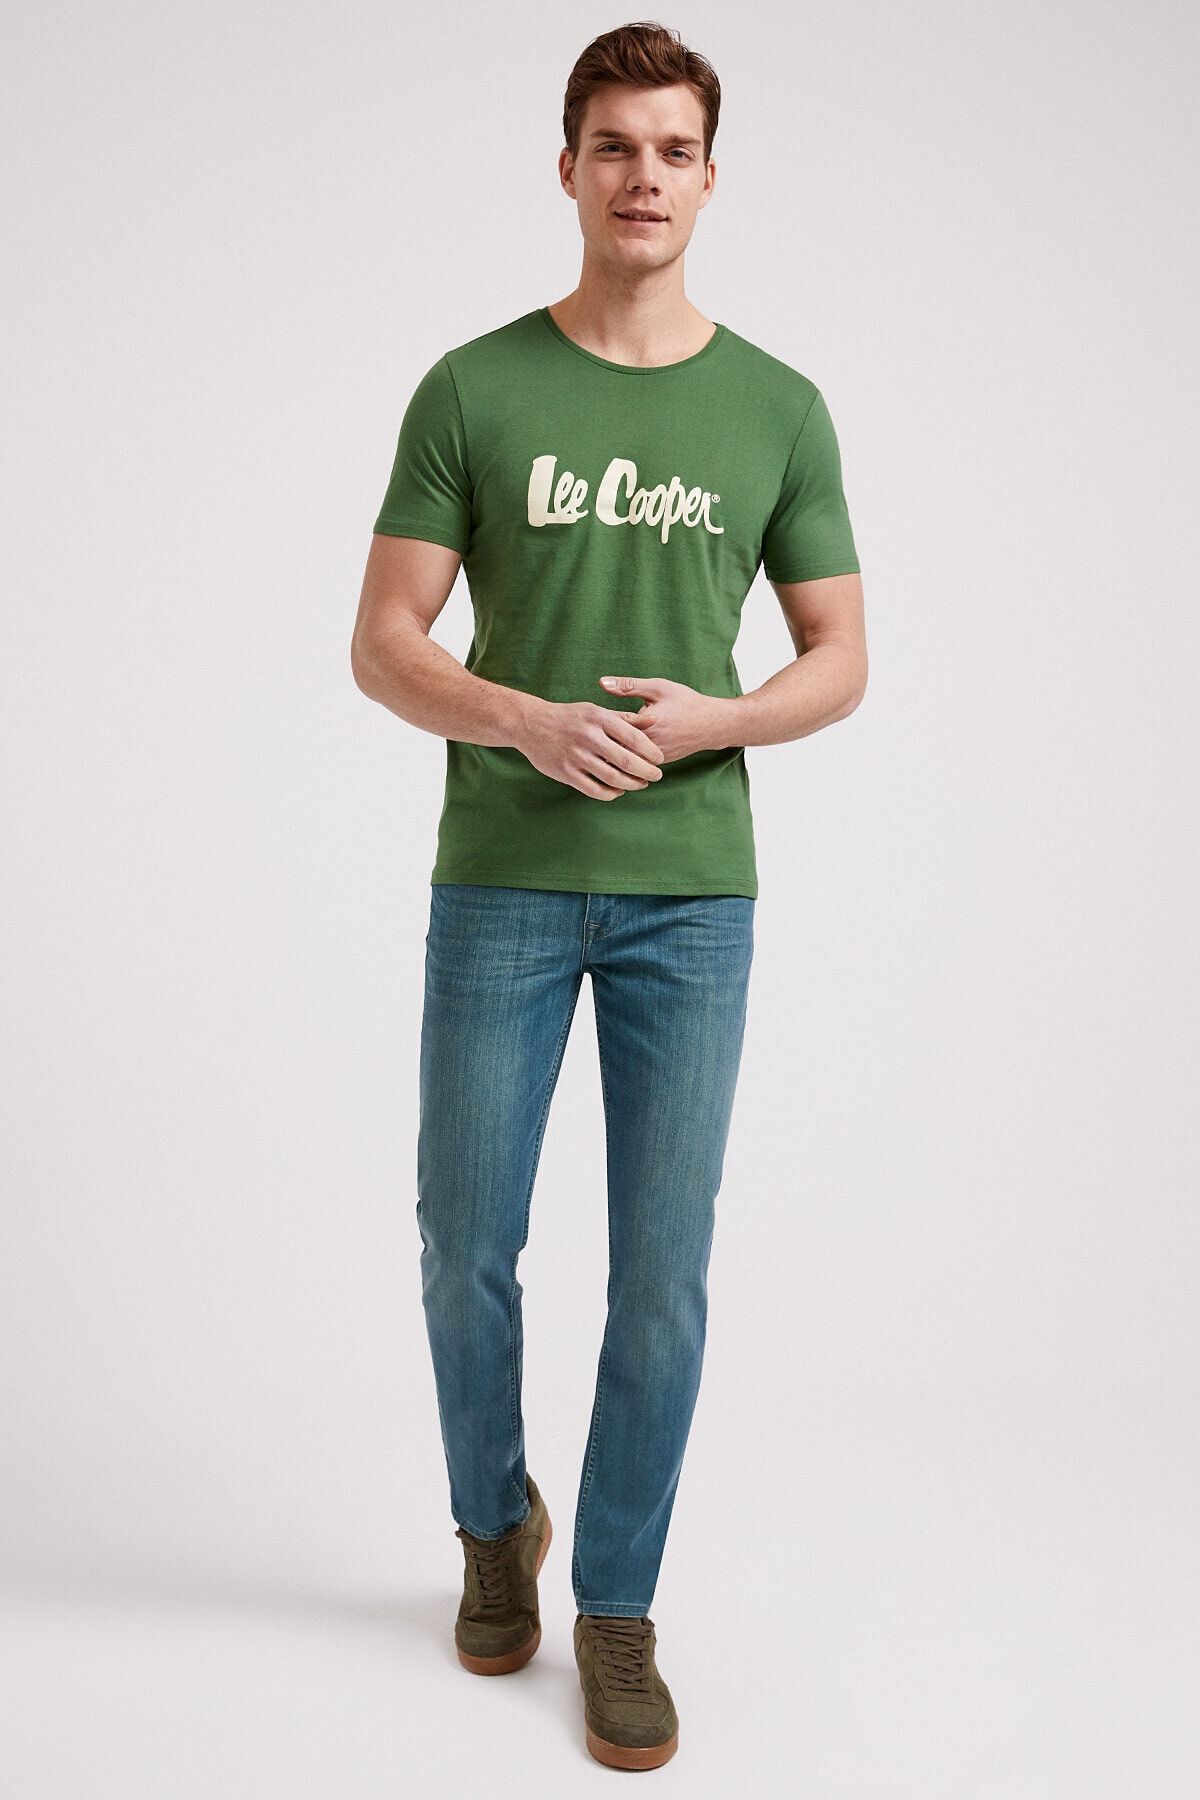 Lee Cooper Erkek Londonlogo O Yaka T-Shirt Yeşil 202 LCM 242011